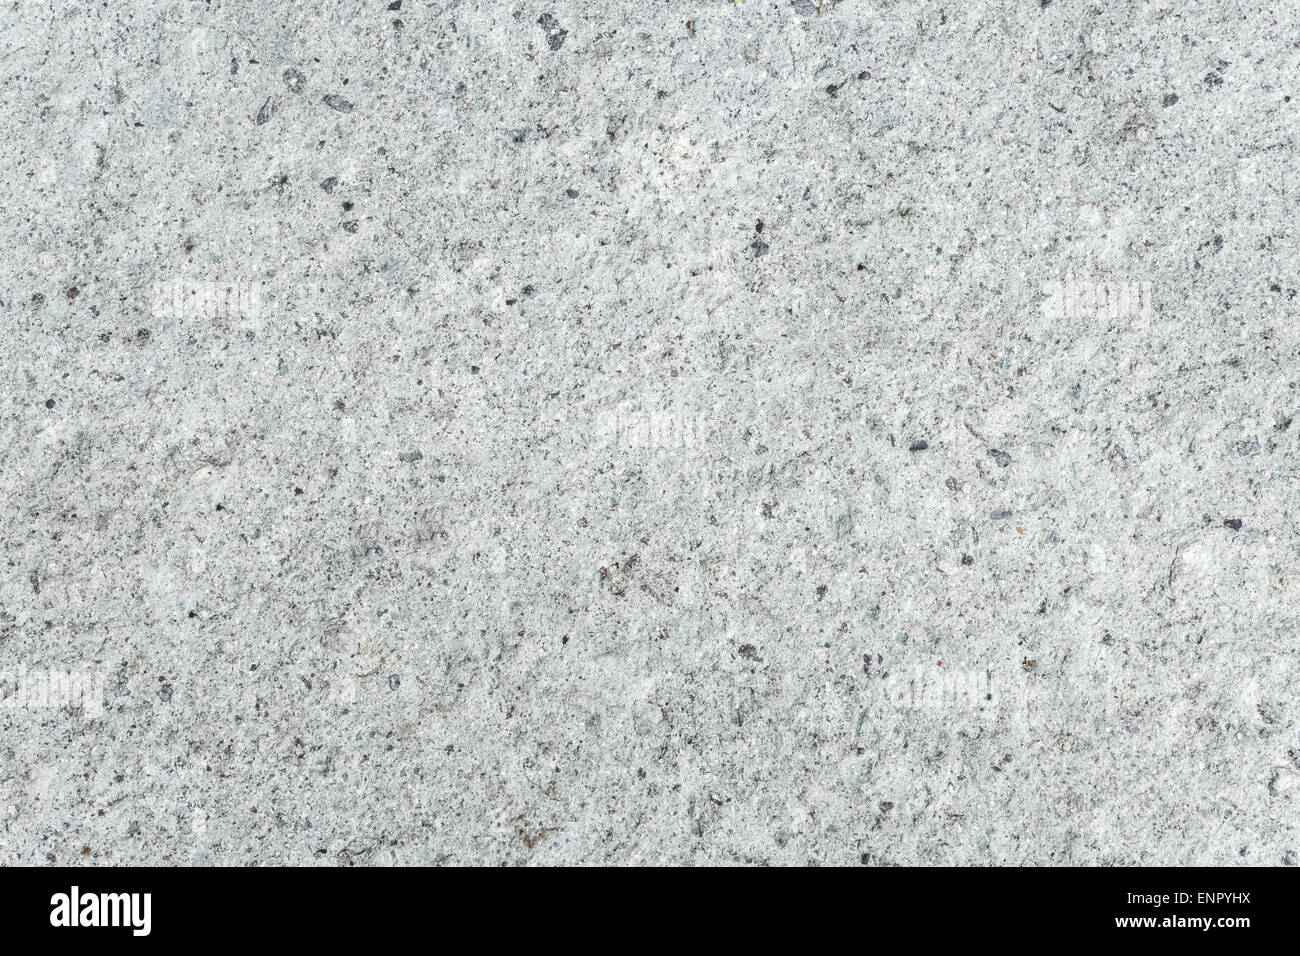 Leichte graue Betonboden mit kleinen schwarzen Punkt-Muster Stockfoto